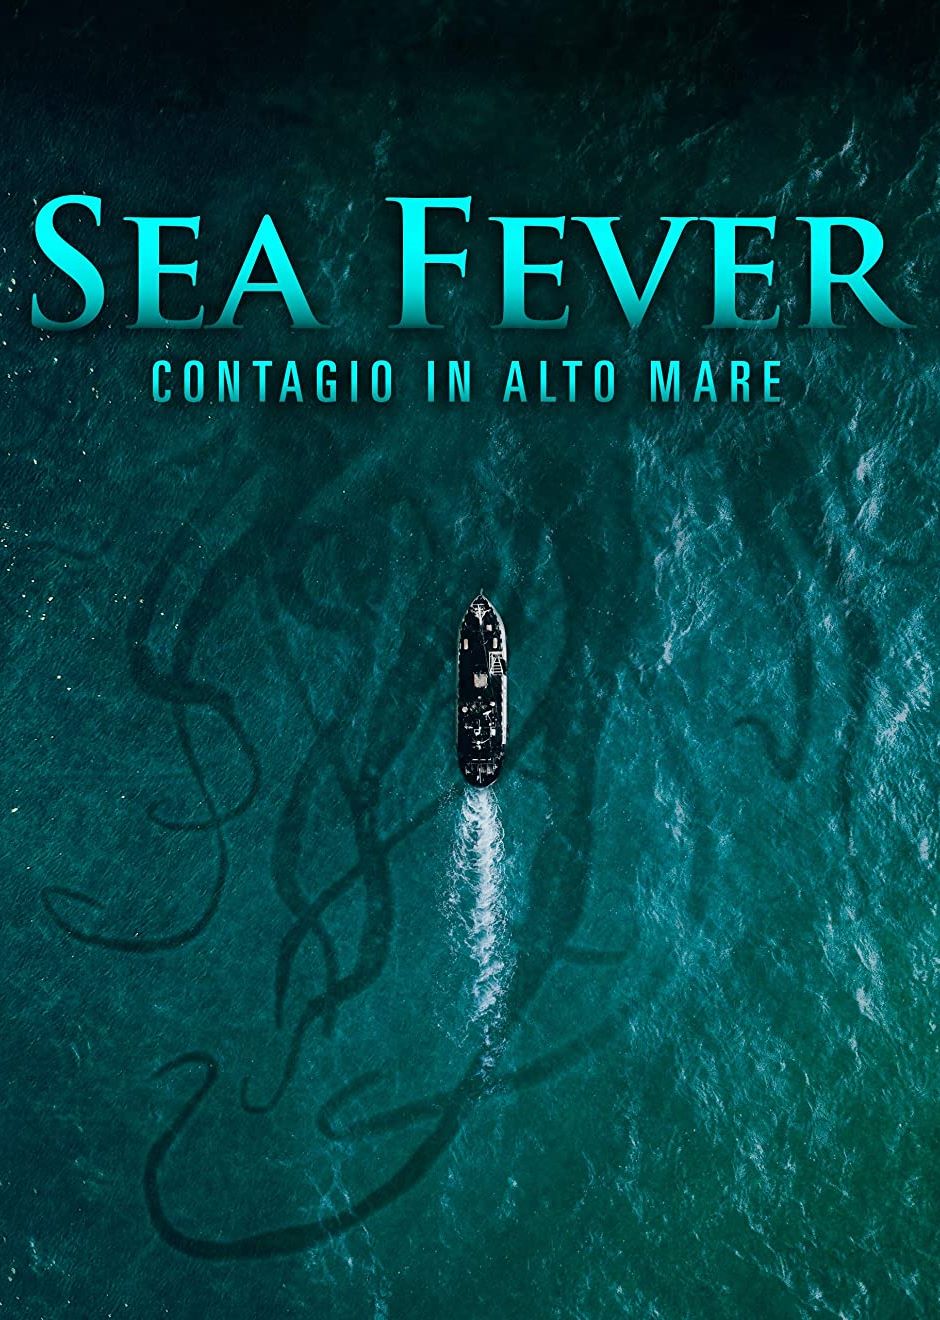 Sea Fever – Contagio in alto mare [HD] (2019)